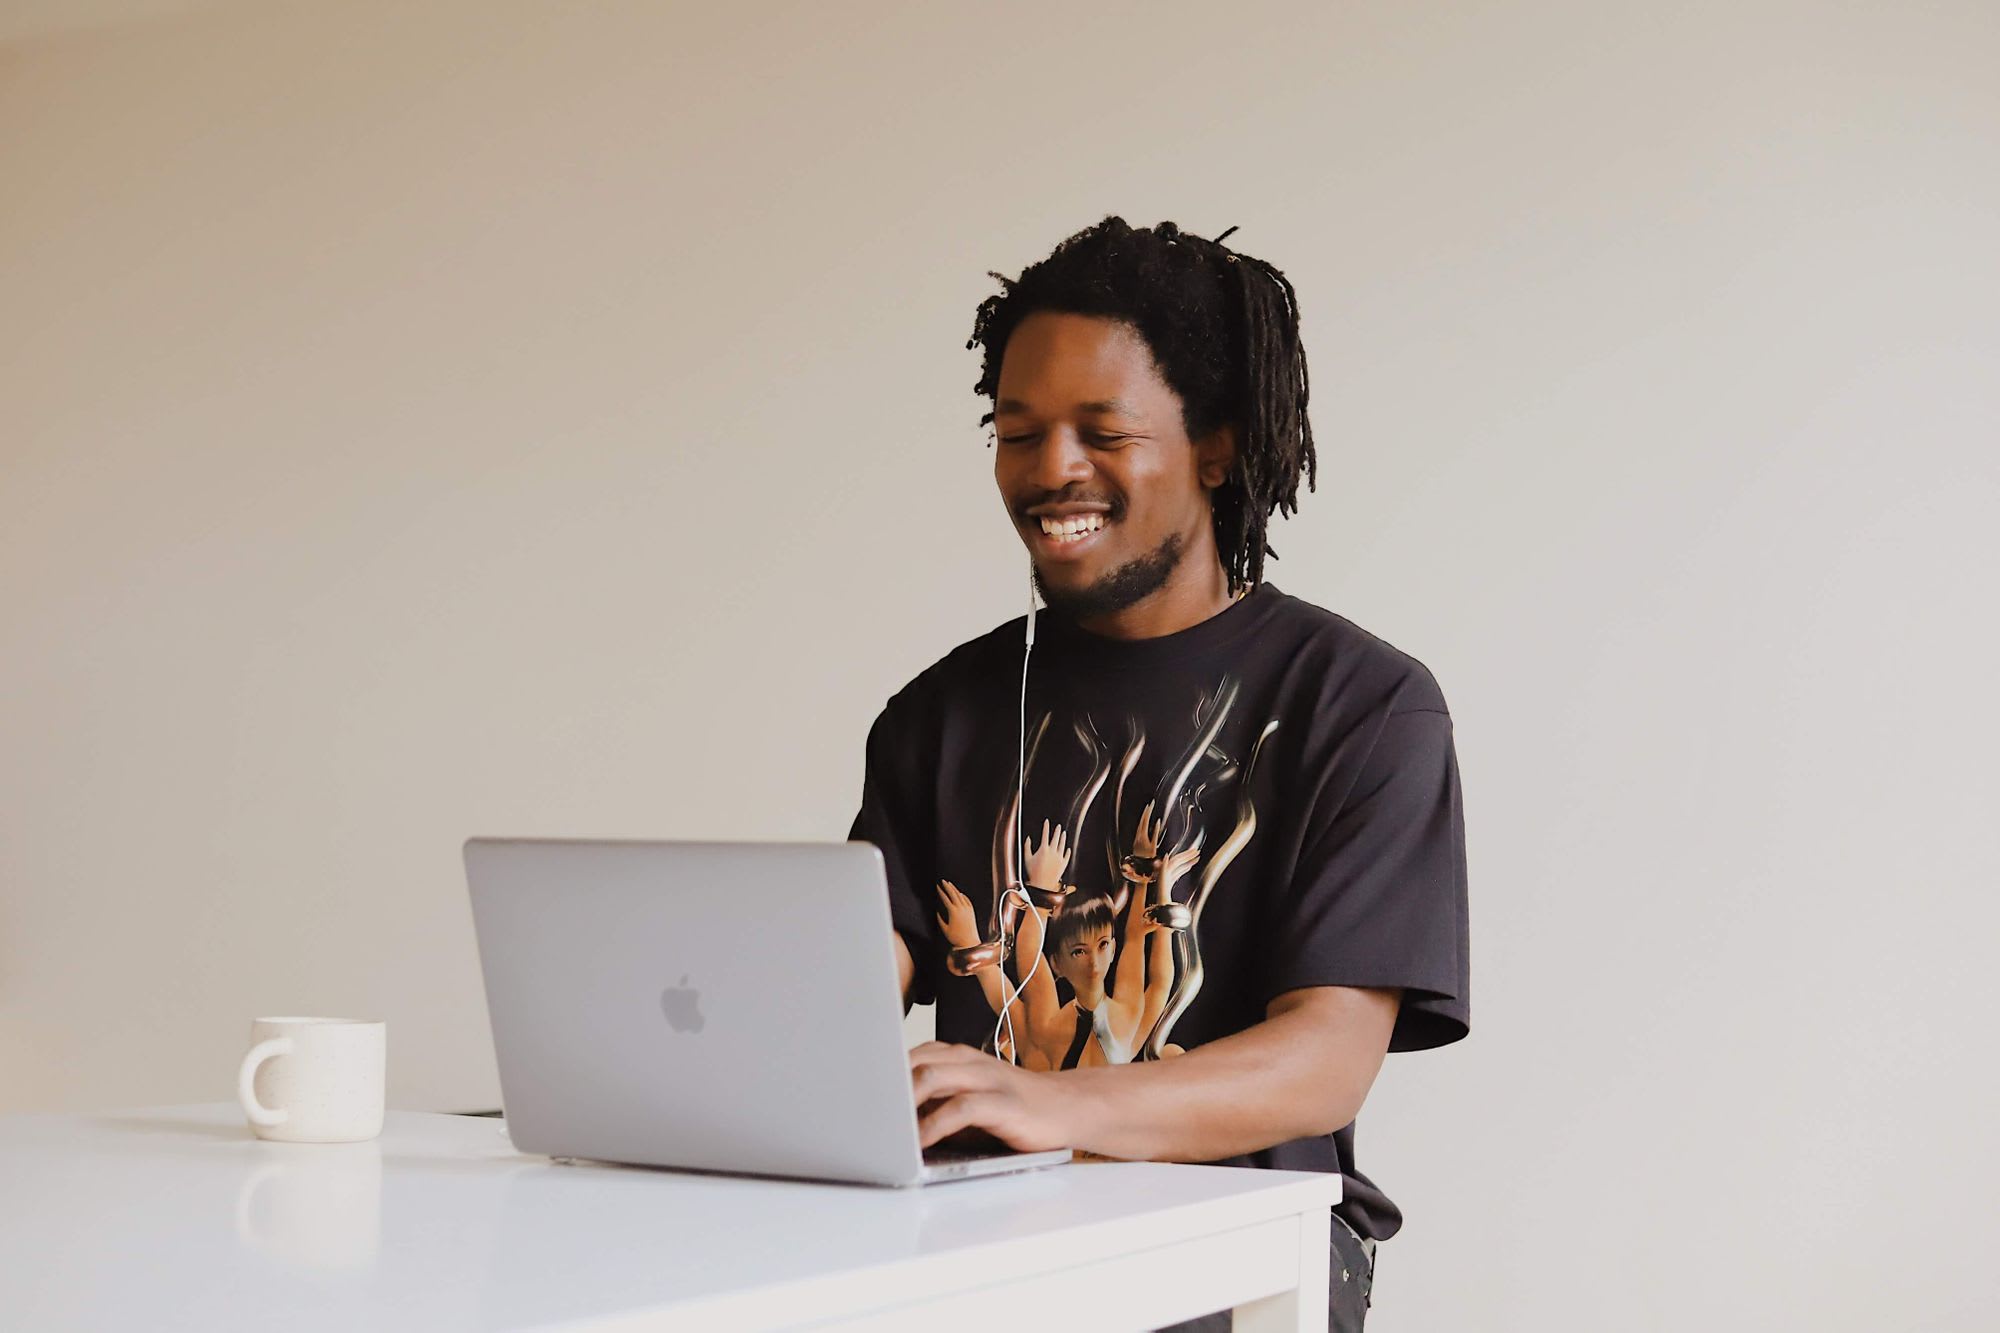 Man smiling looking at laptop